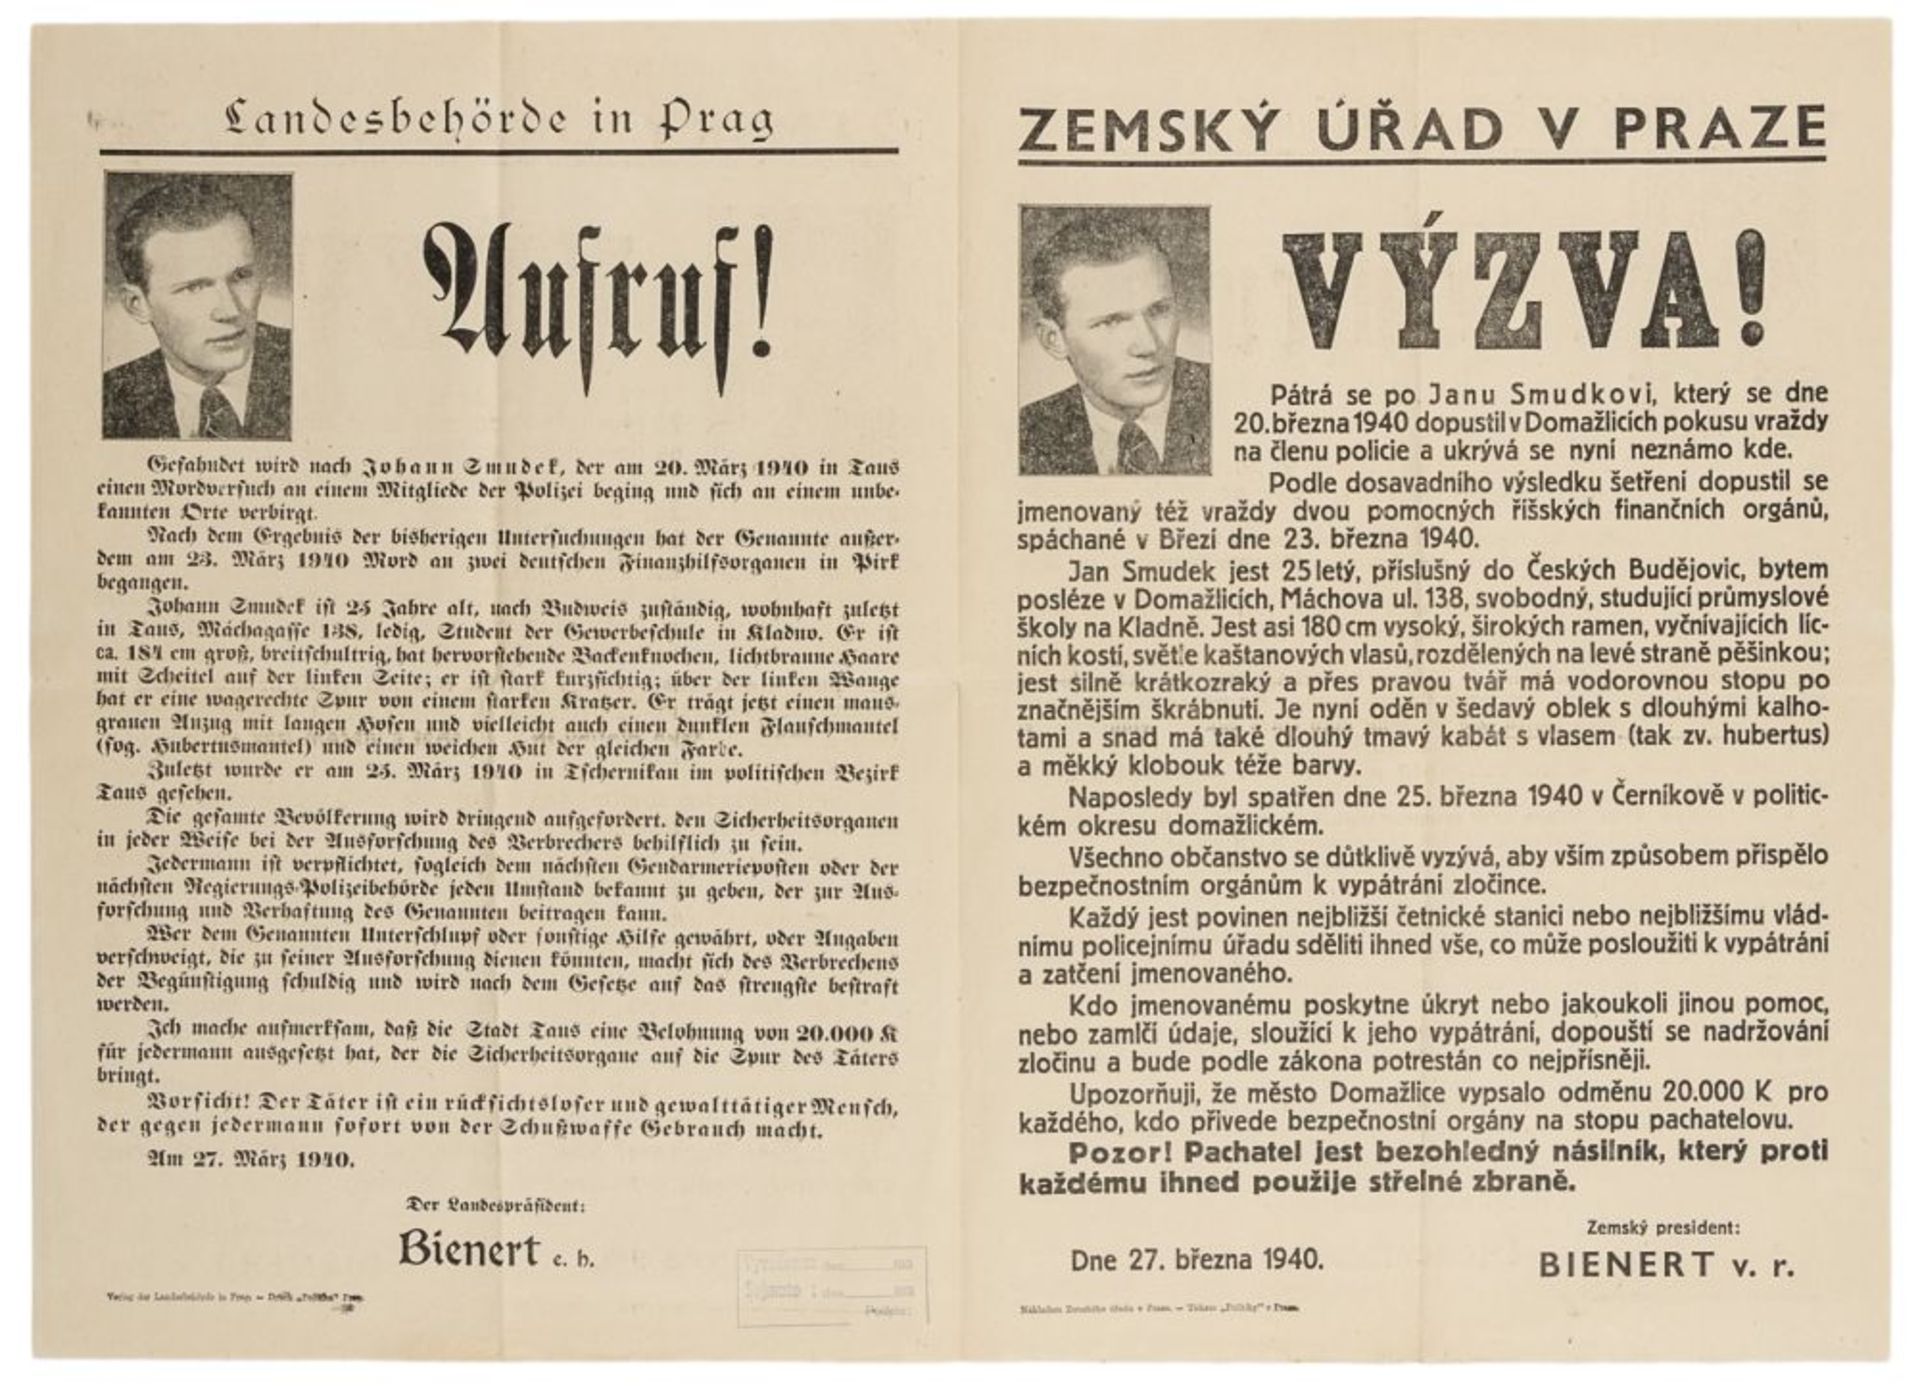 Nationalsozialismus - - Fahndungsplakat von Jan Smudek. Prag, Verlag der Landesbehörde, 27.3.1940.